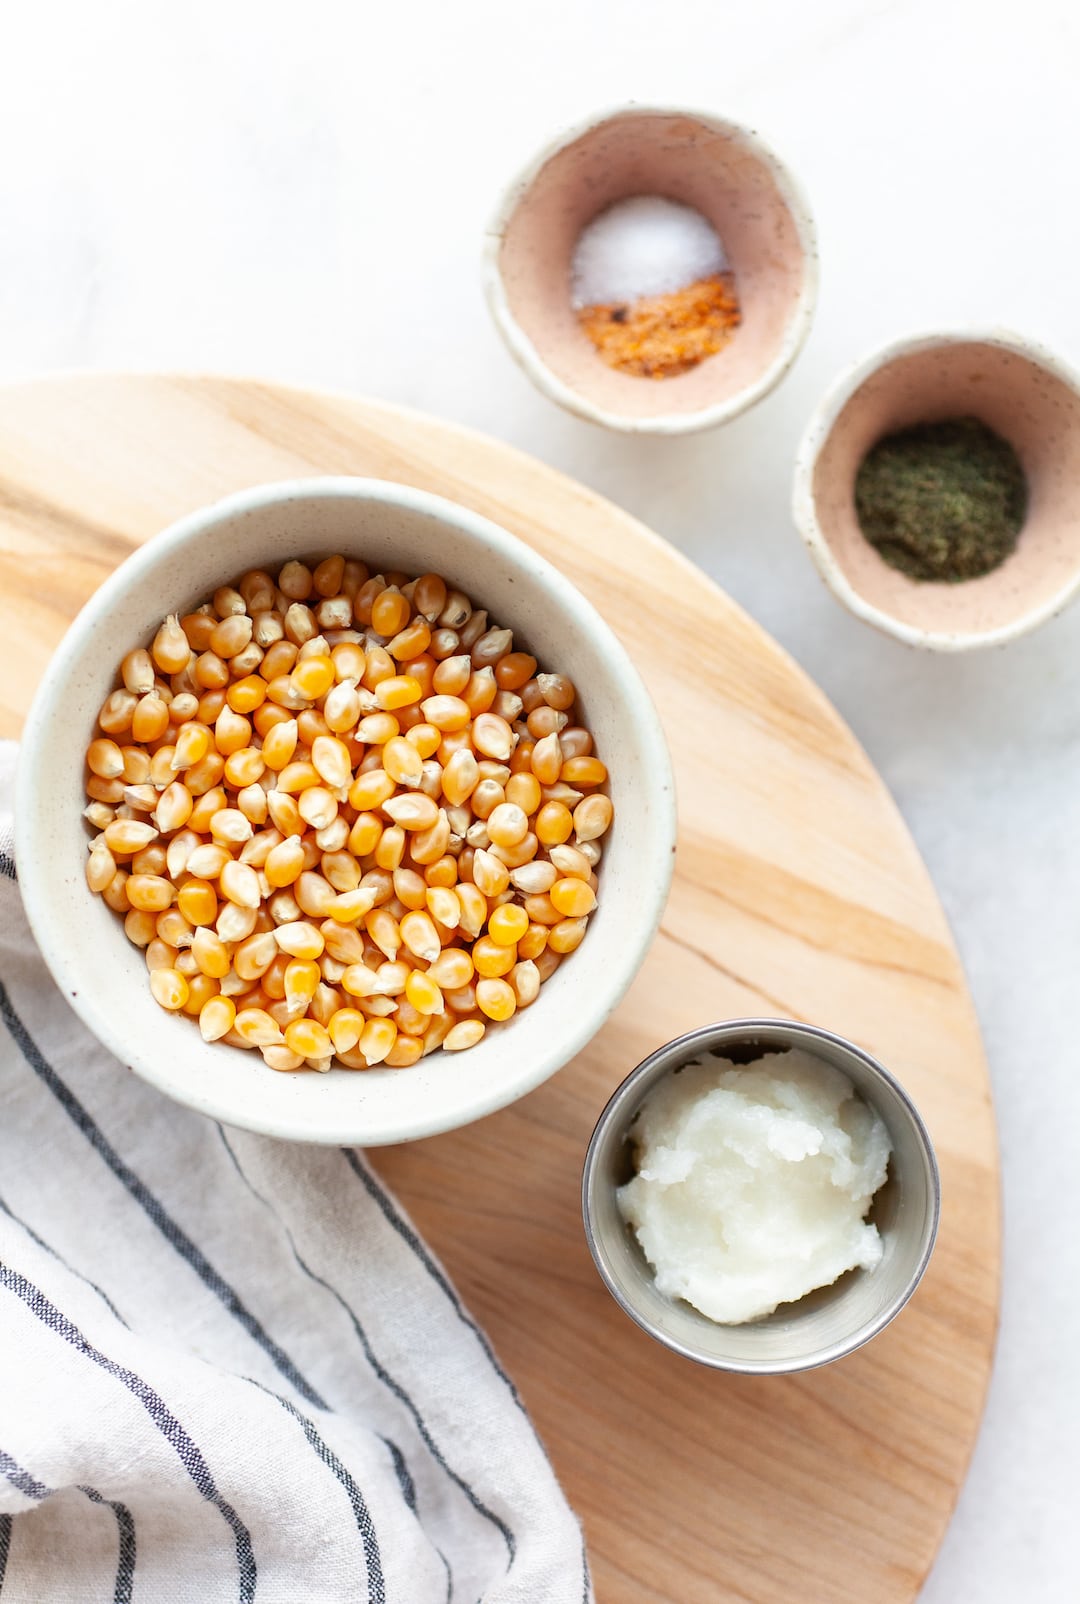 instant pot popcorn ingredients on a wooden board - popcorn kernels, coconut oil, seasonings